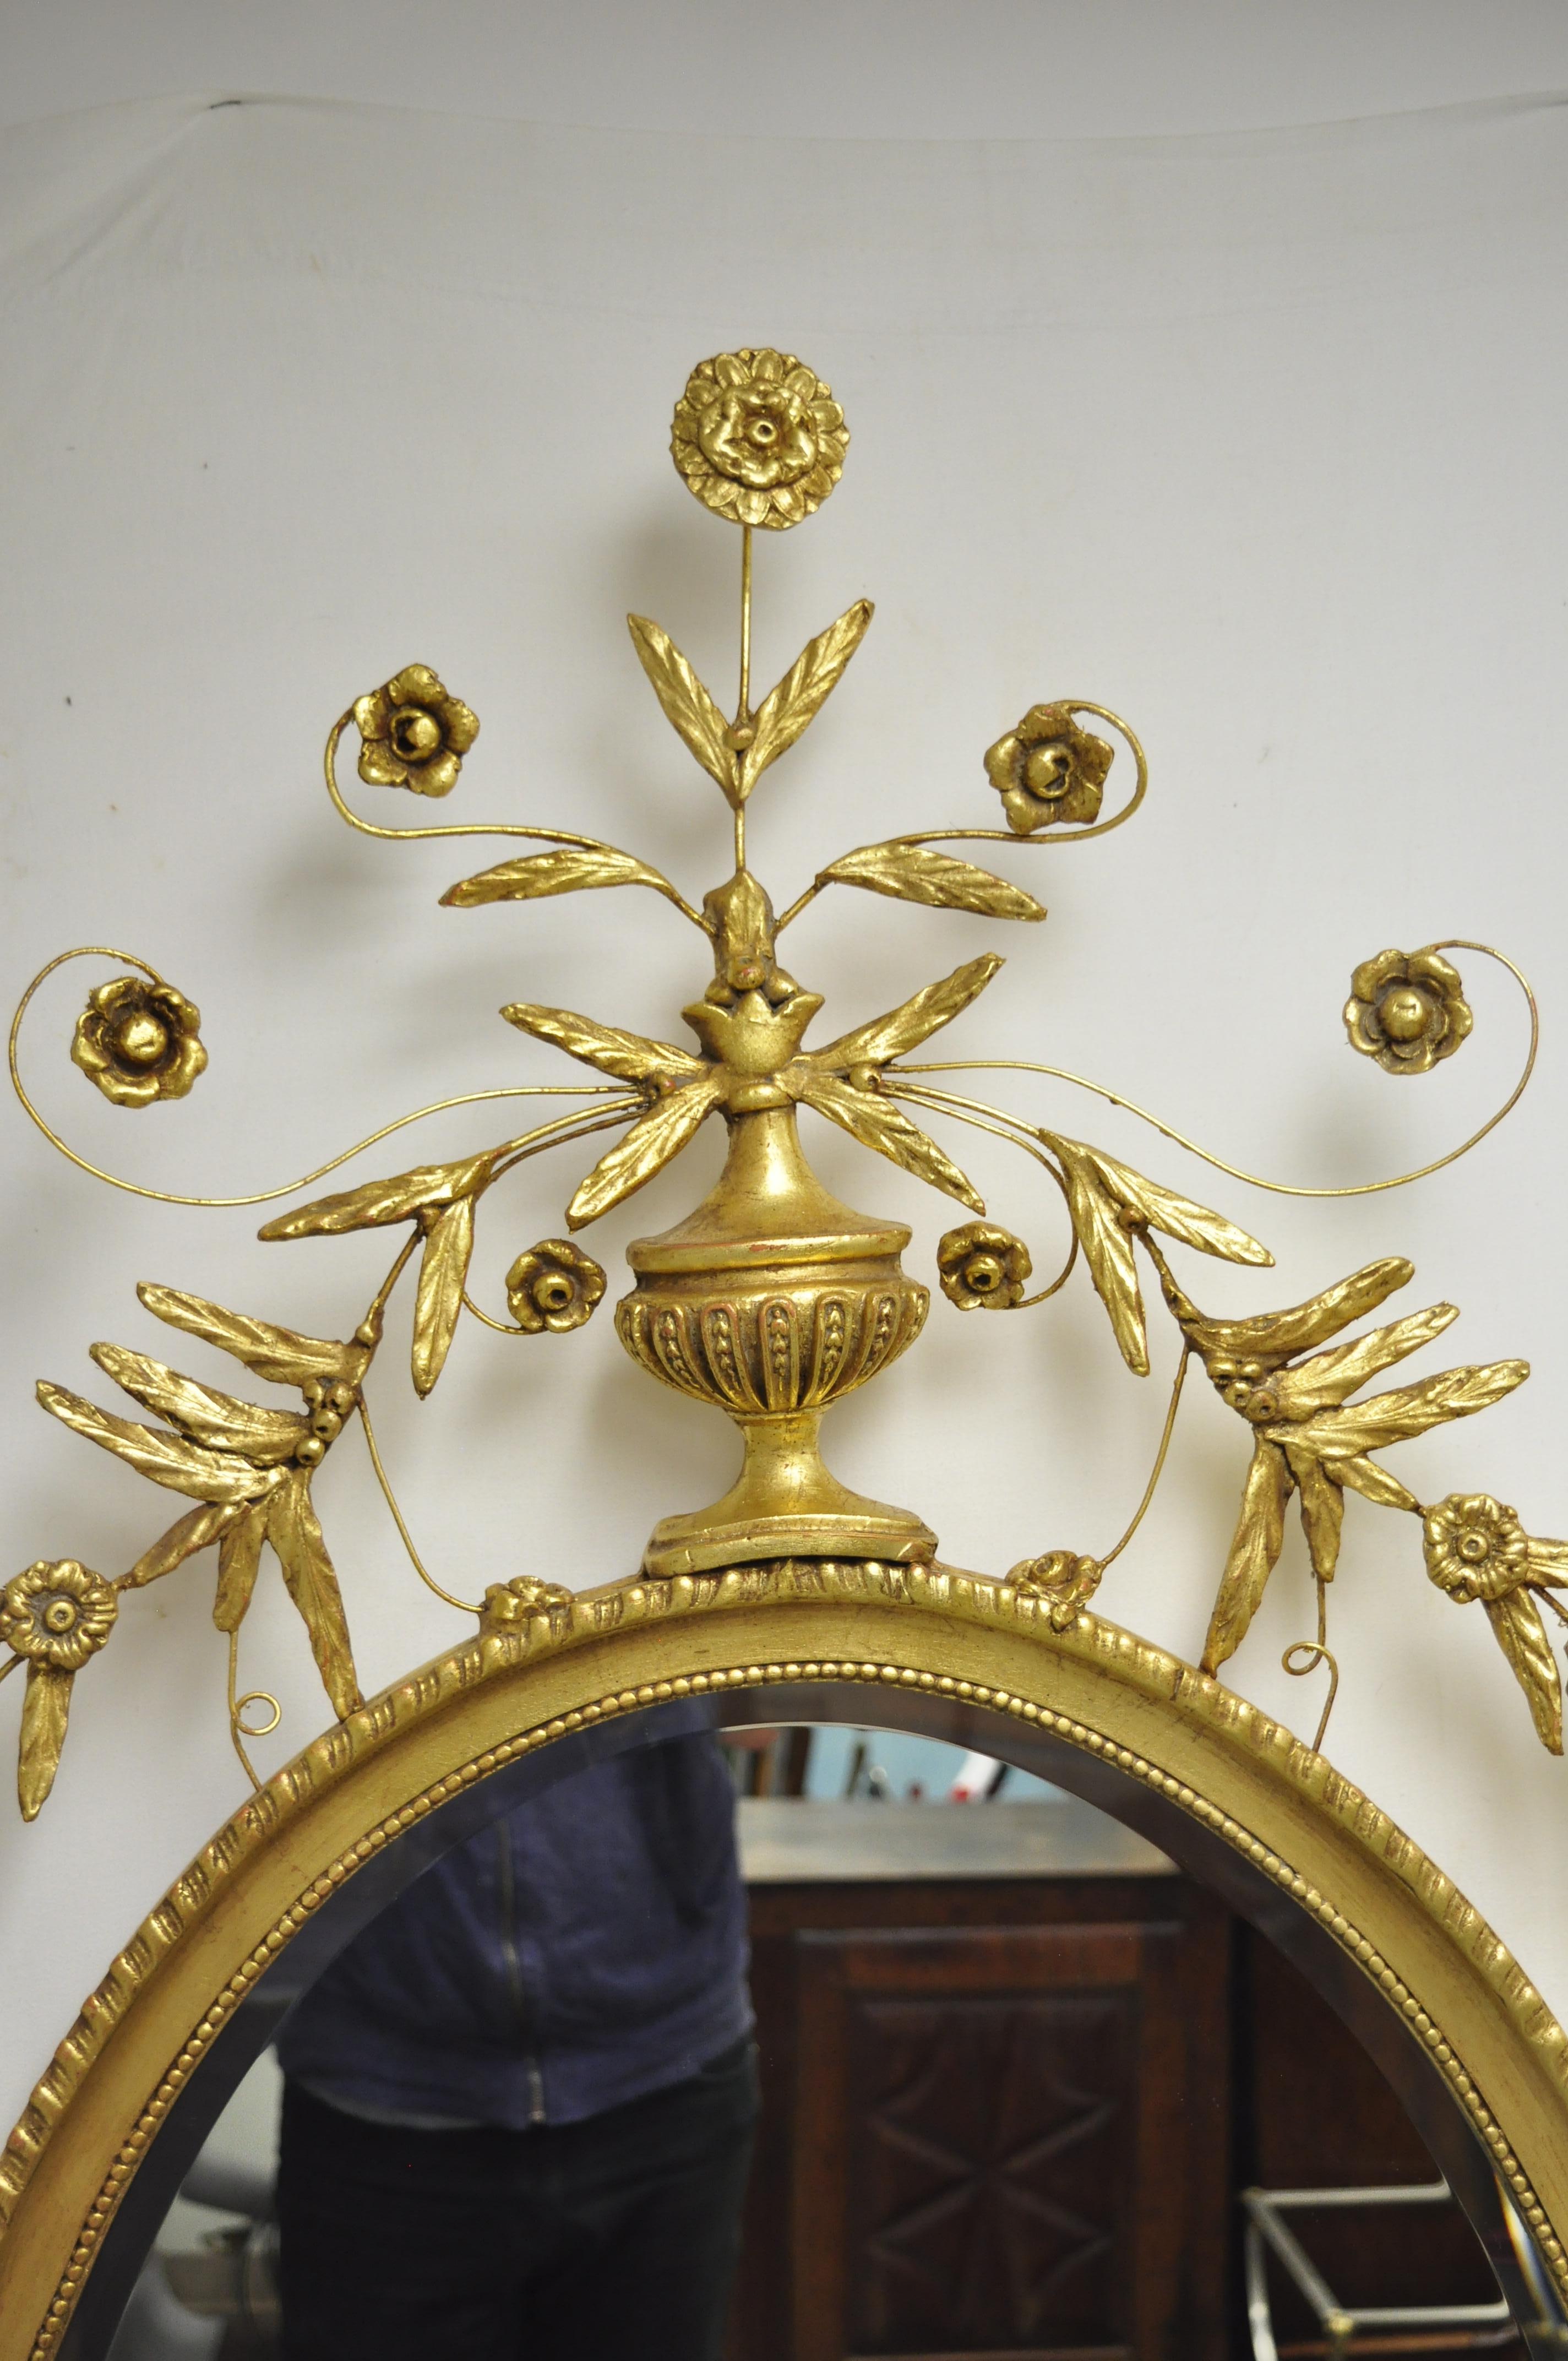 Friedman Brothers grand miroir mural ovale en bois doré de style Adams. L'article présente une urne et une couronne de feuilles, un cadre doré, une étiquette originale, un verre ovale biseauté, un style et une forme remarquables, vers le 20e-21e